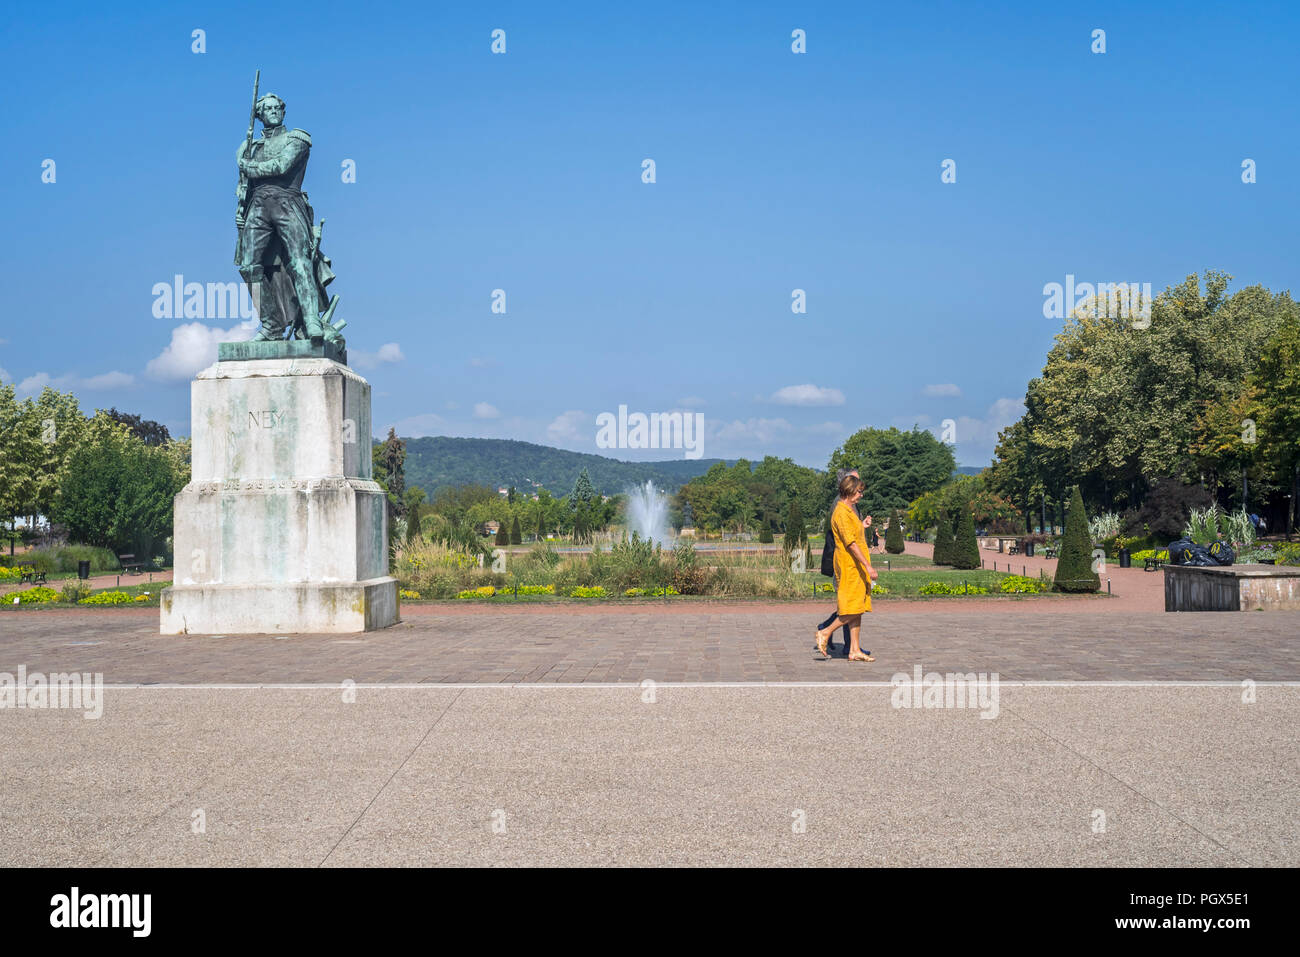 Maréchal Ney monument / statue de Marshall Ney et personnes âgées touristes autour de l'Esplanade dans la ville Metz, Moselle, Lorraine, France Banque D'Images